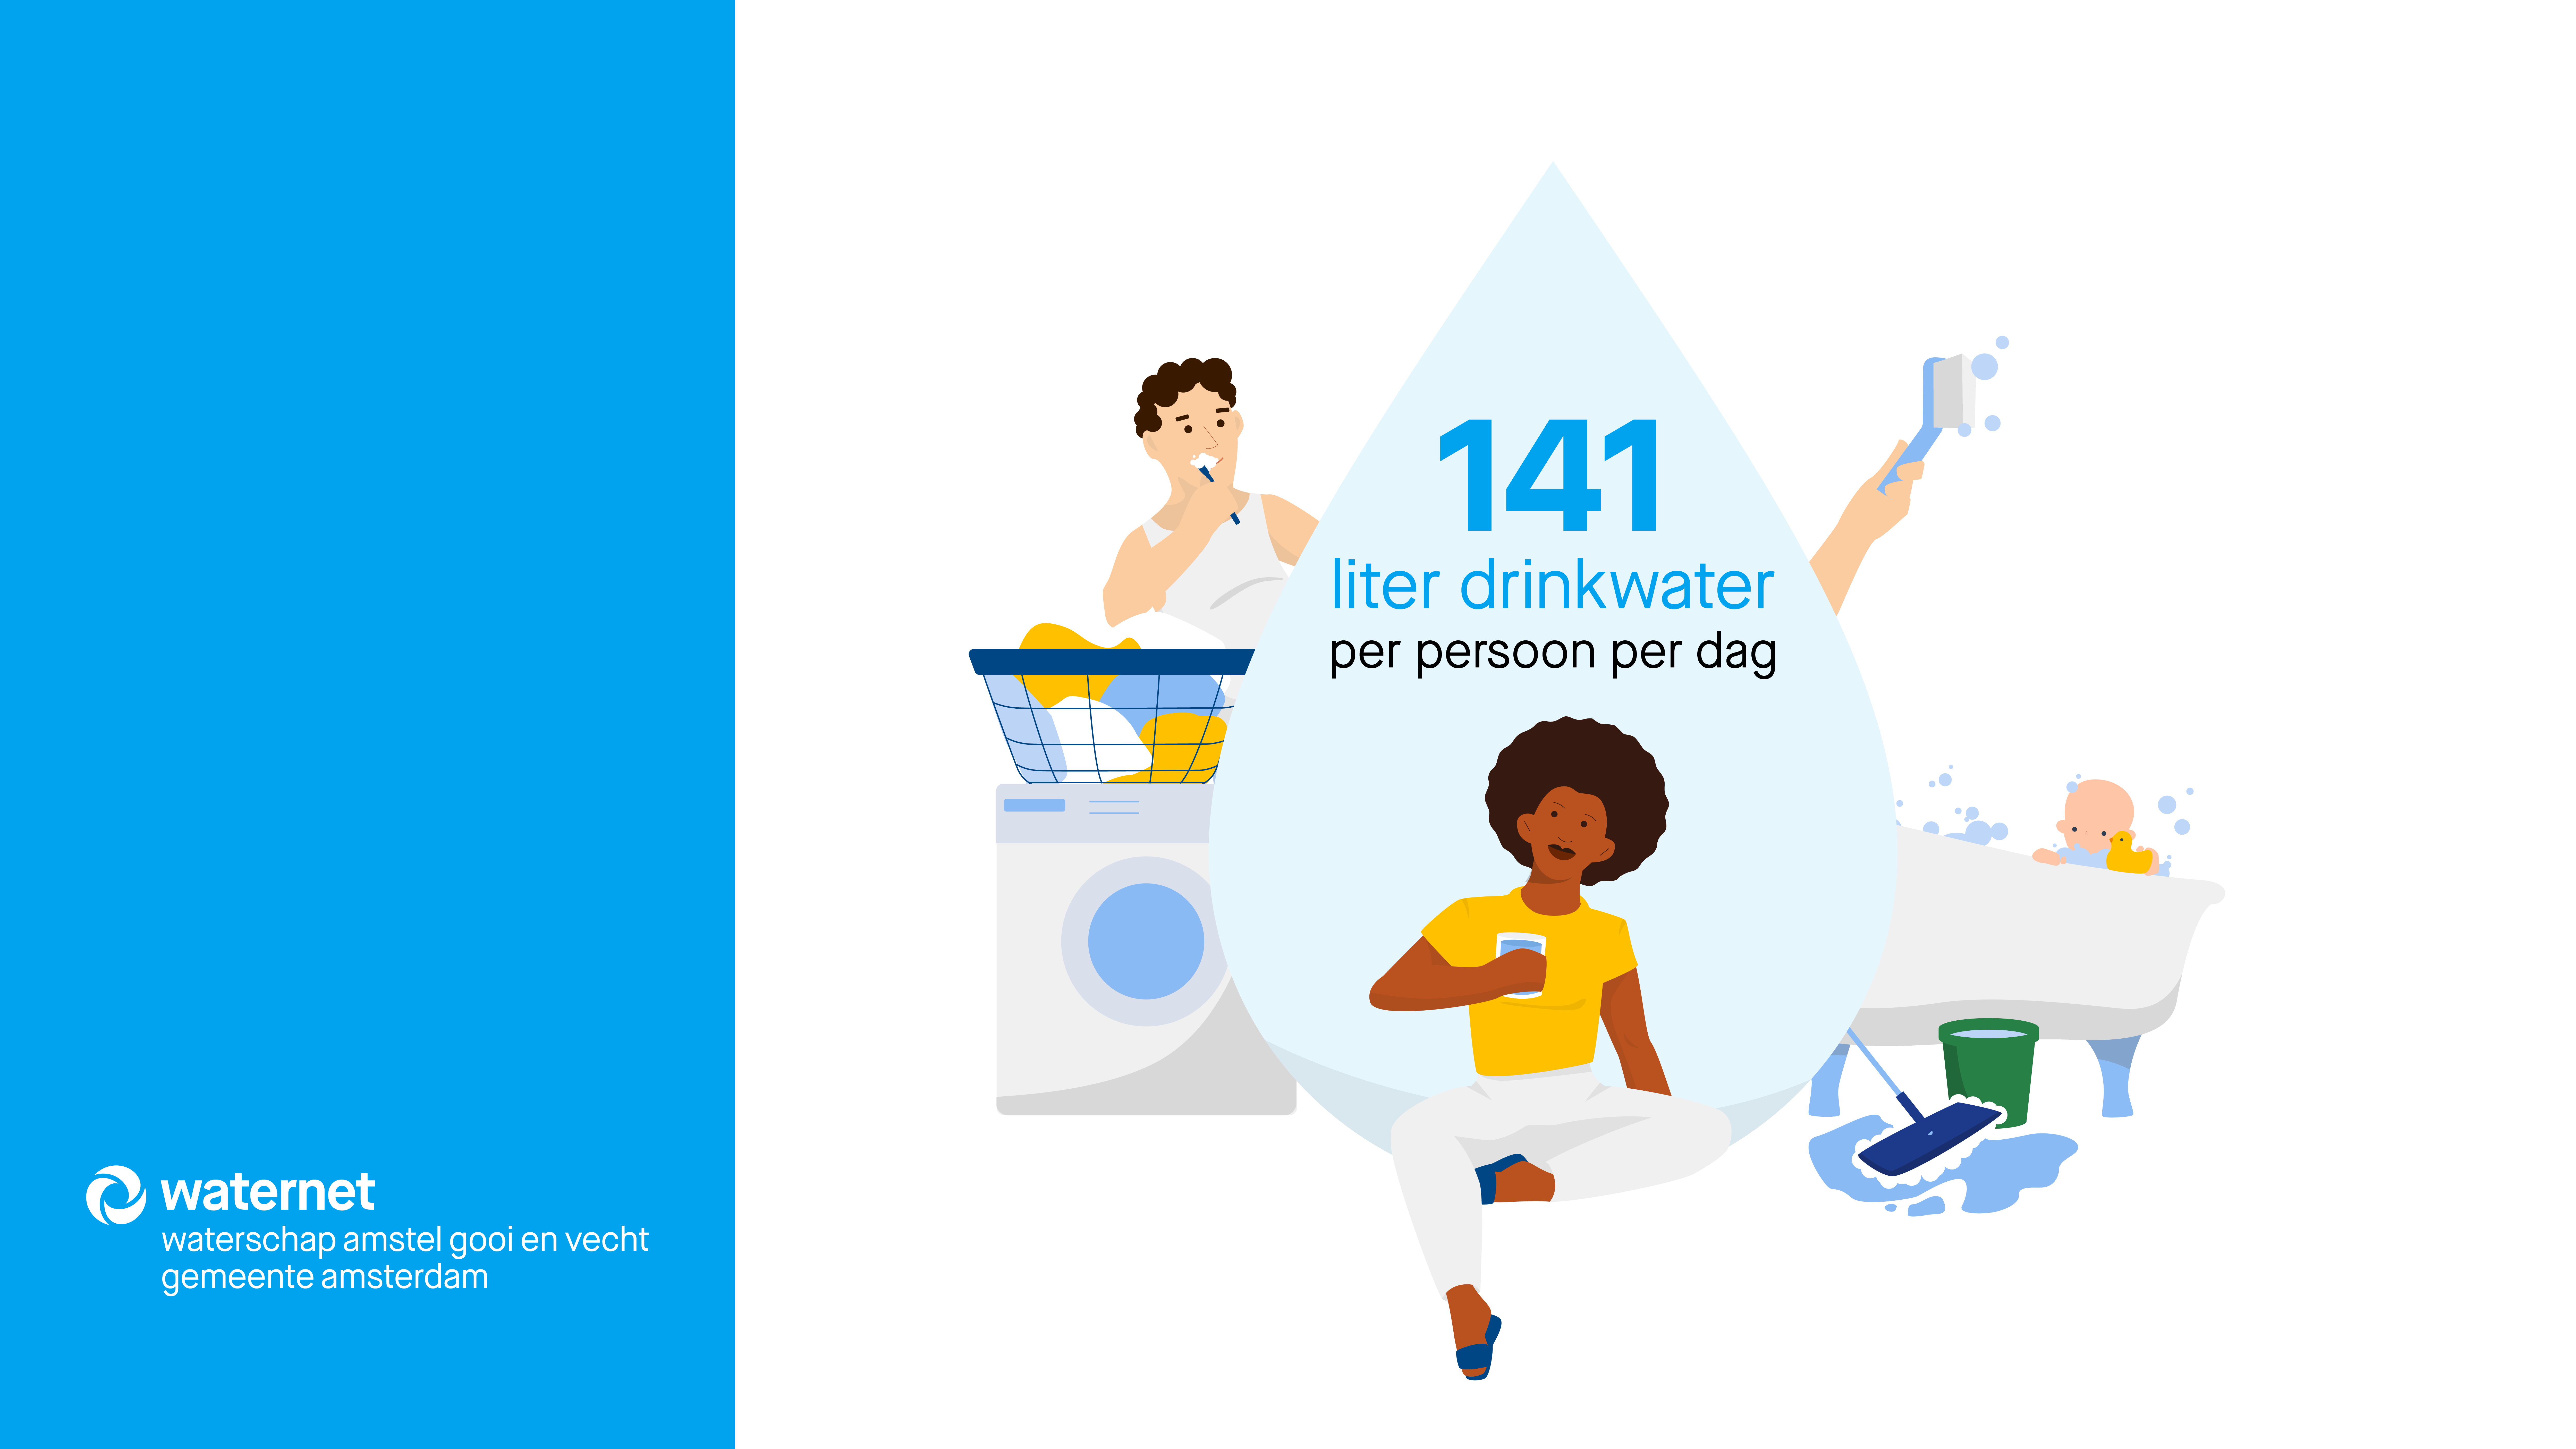 afbeelding waarin staat dat klanten gemiddeld 141 liter water per persoon per dag drinken